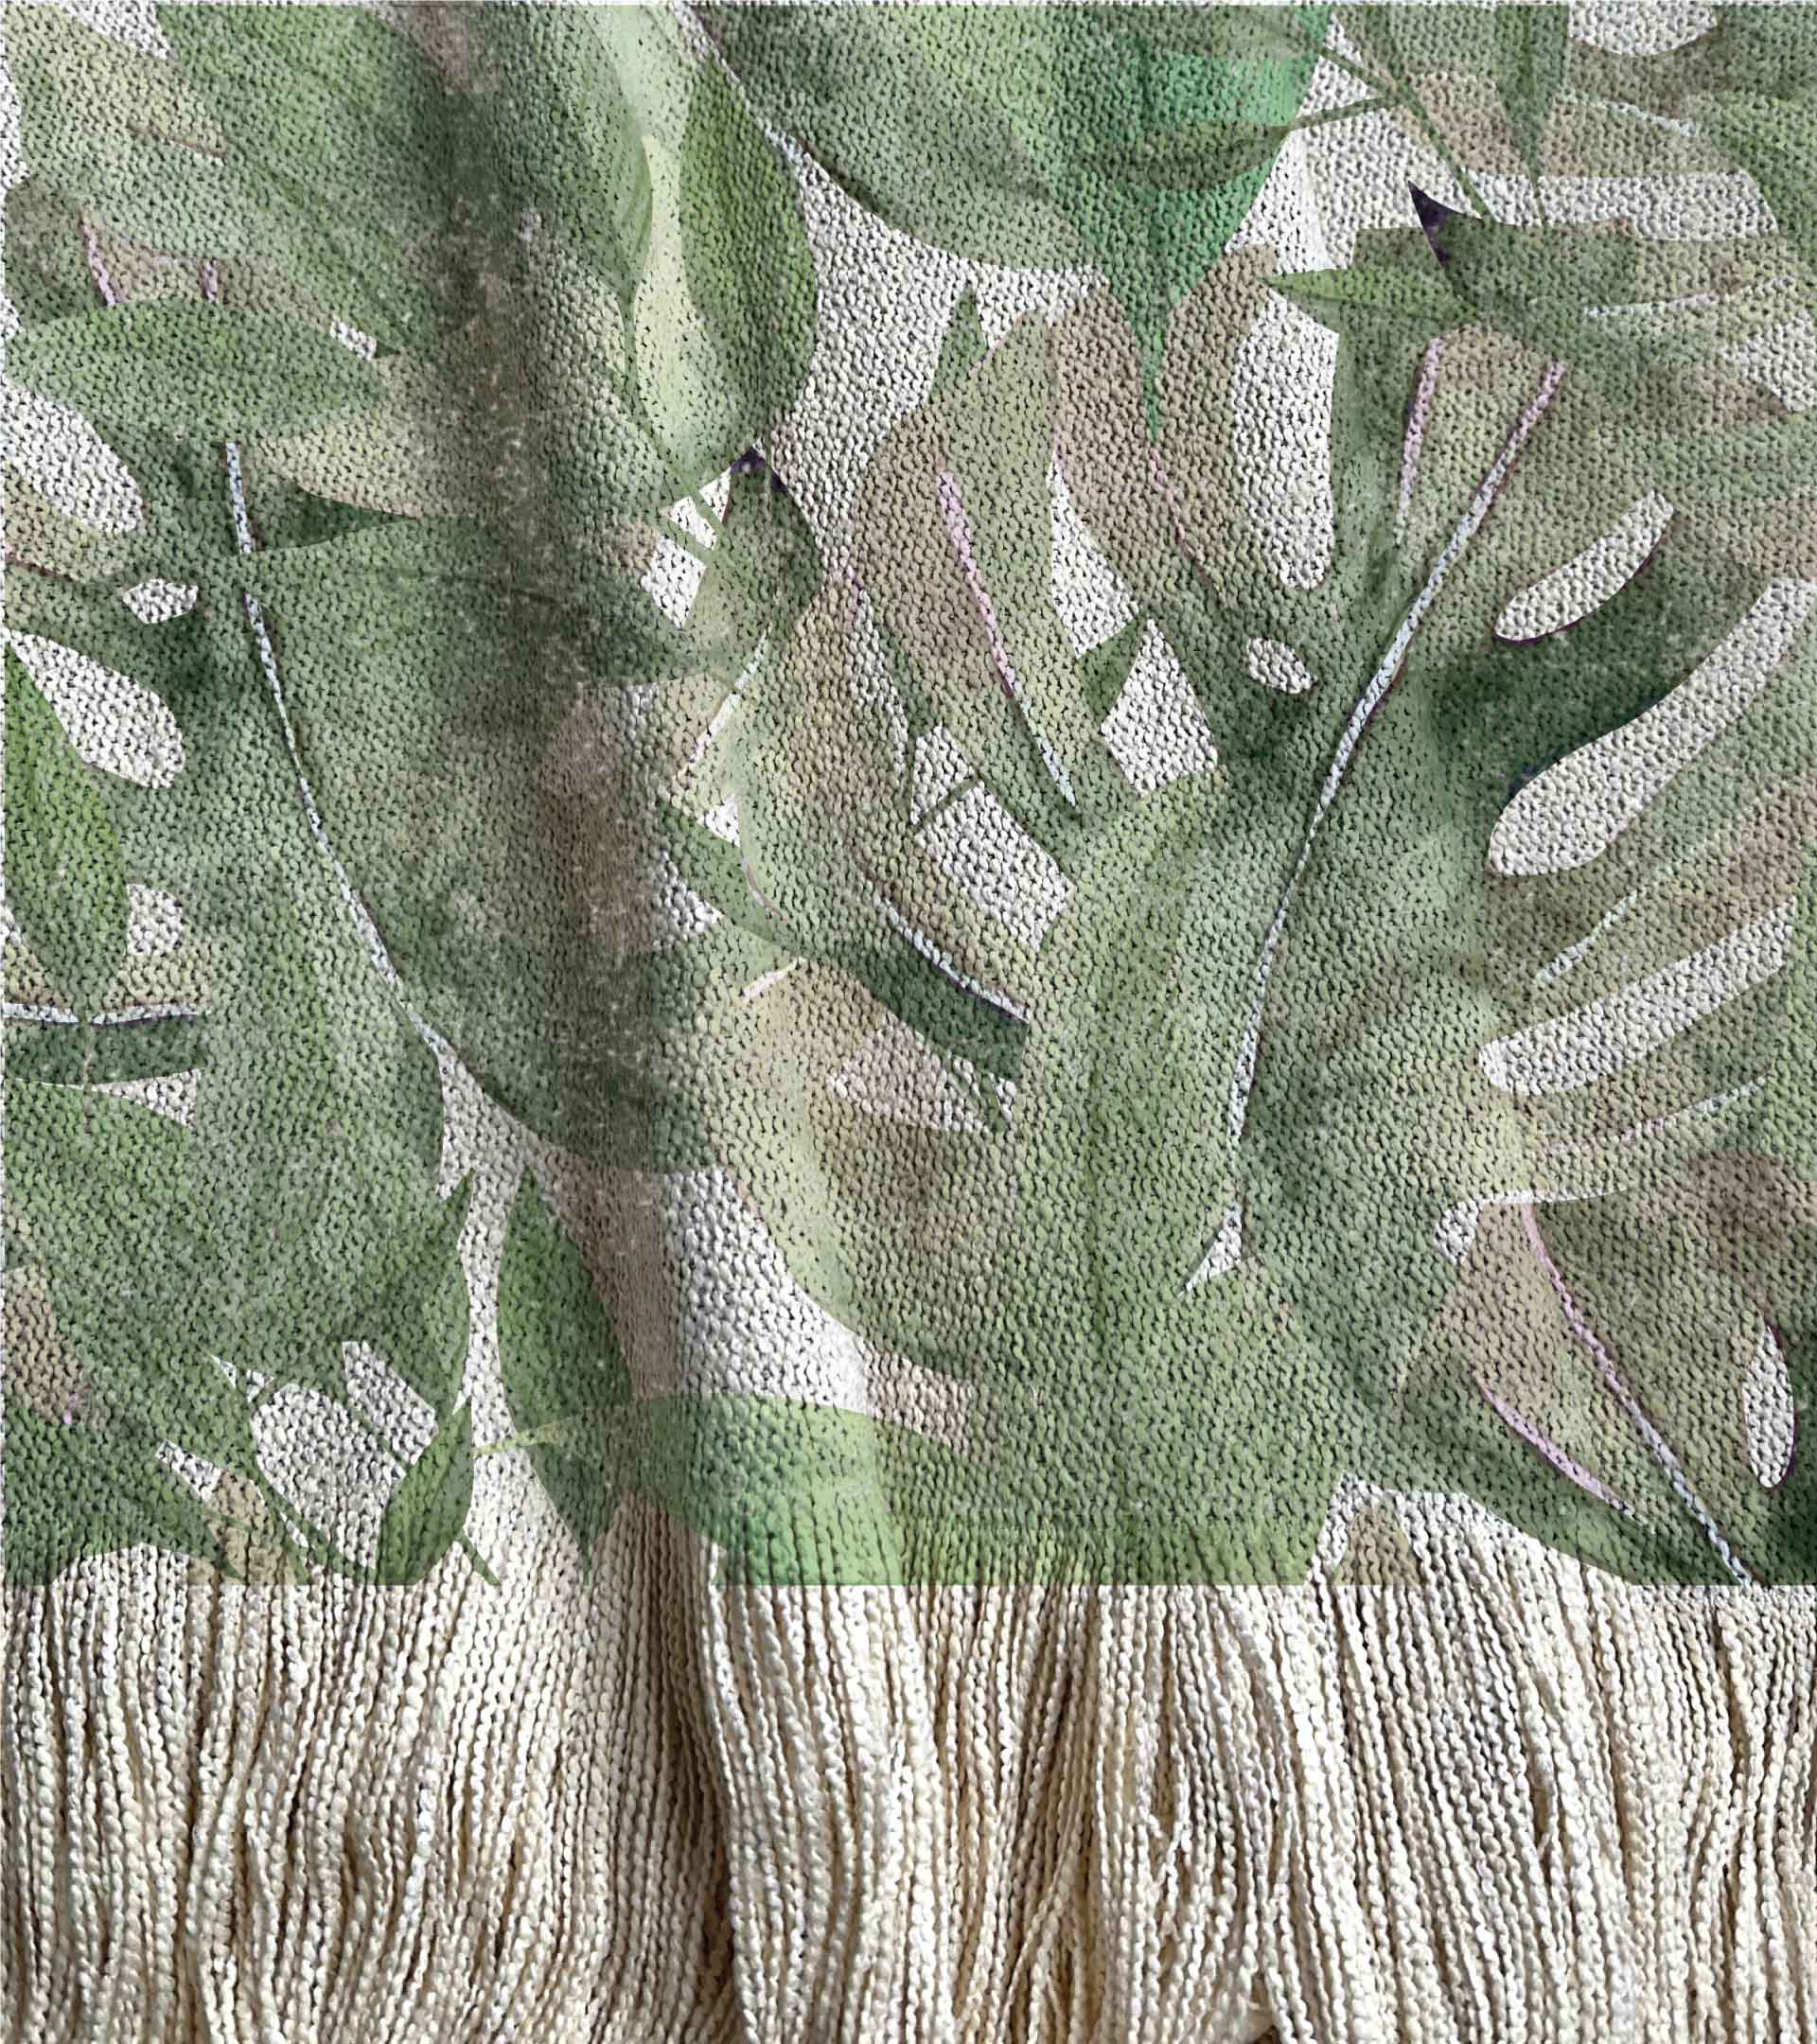 Alfombra tejida, diseño selvatico de hojas grandes verdes pintadas en acuarela